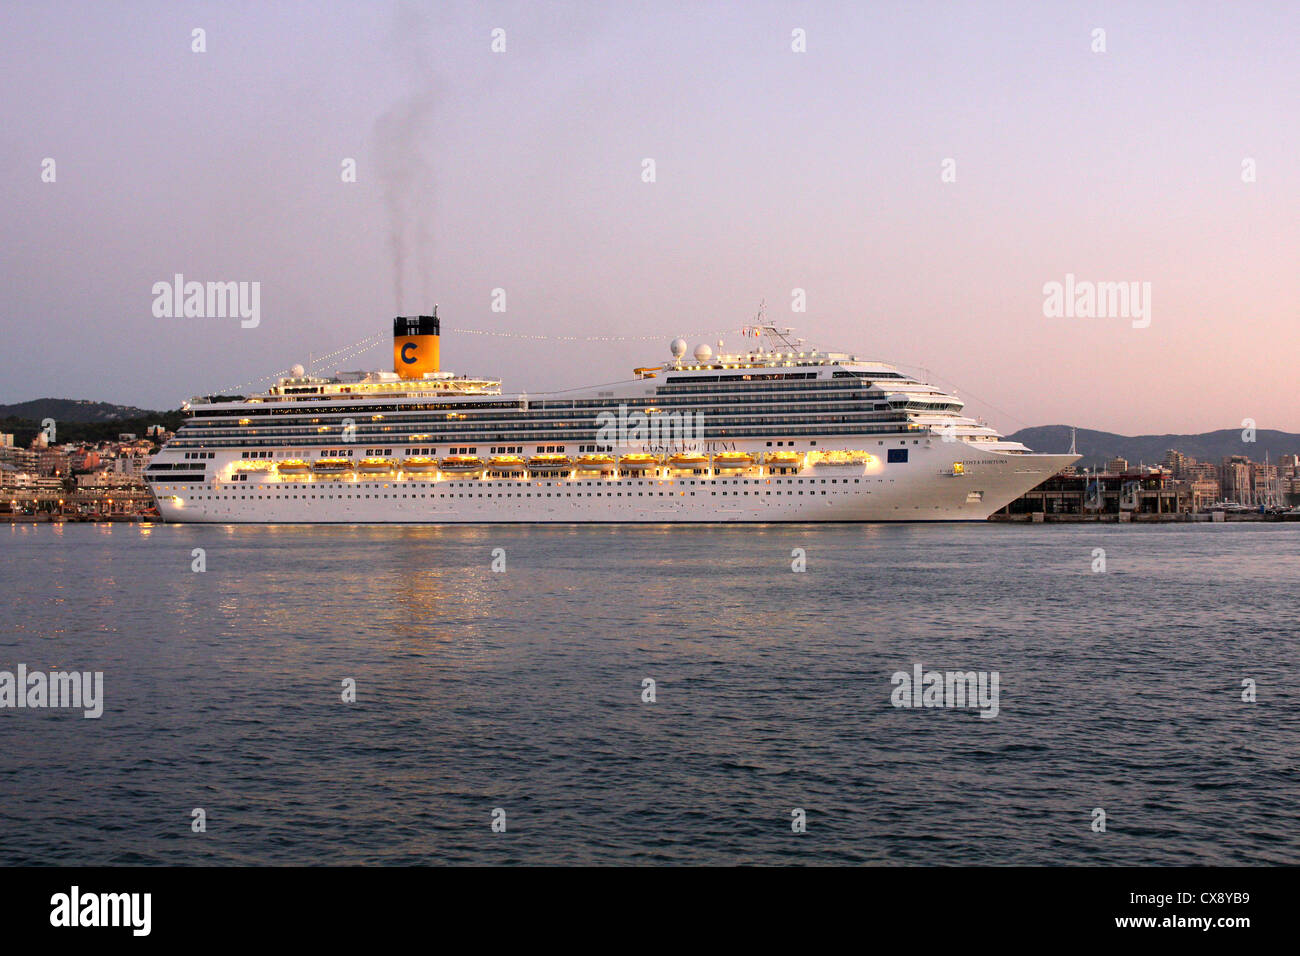 Costa Cruise Lines Kreuzfahrtschiff "Costa Fortuna" während am frühen Morgen Ankunft in den Hafen von Palma De Mallorca / Mallorca Stockfoto